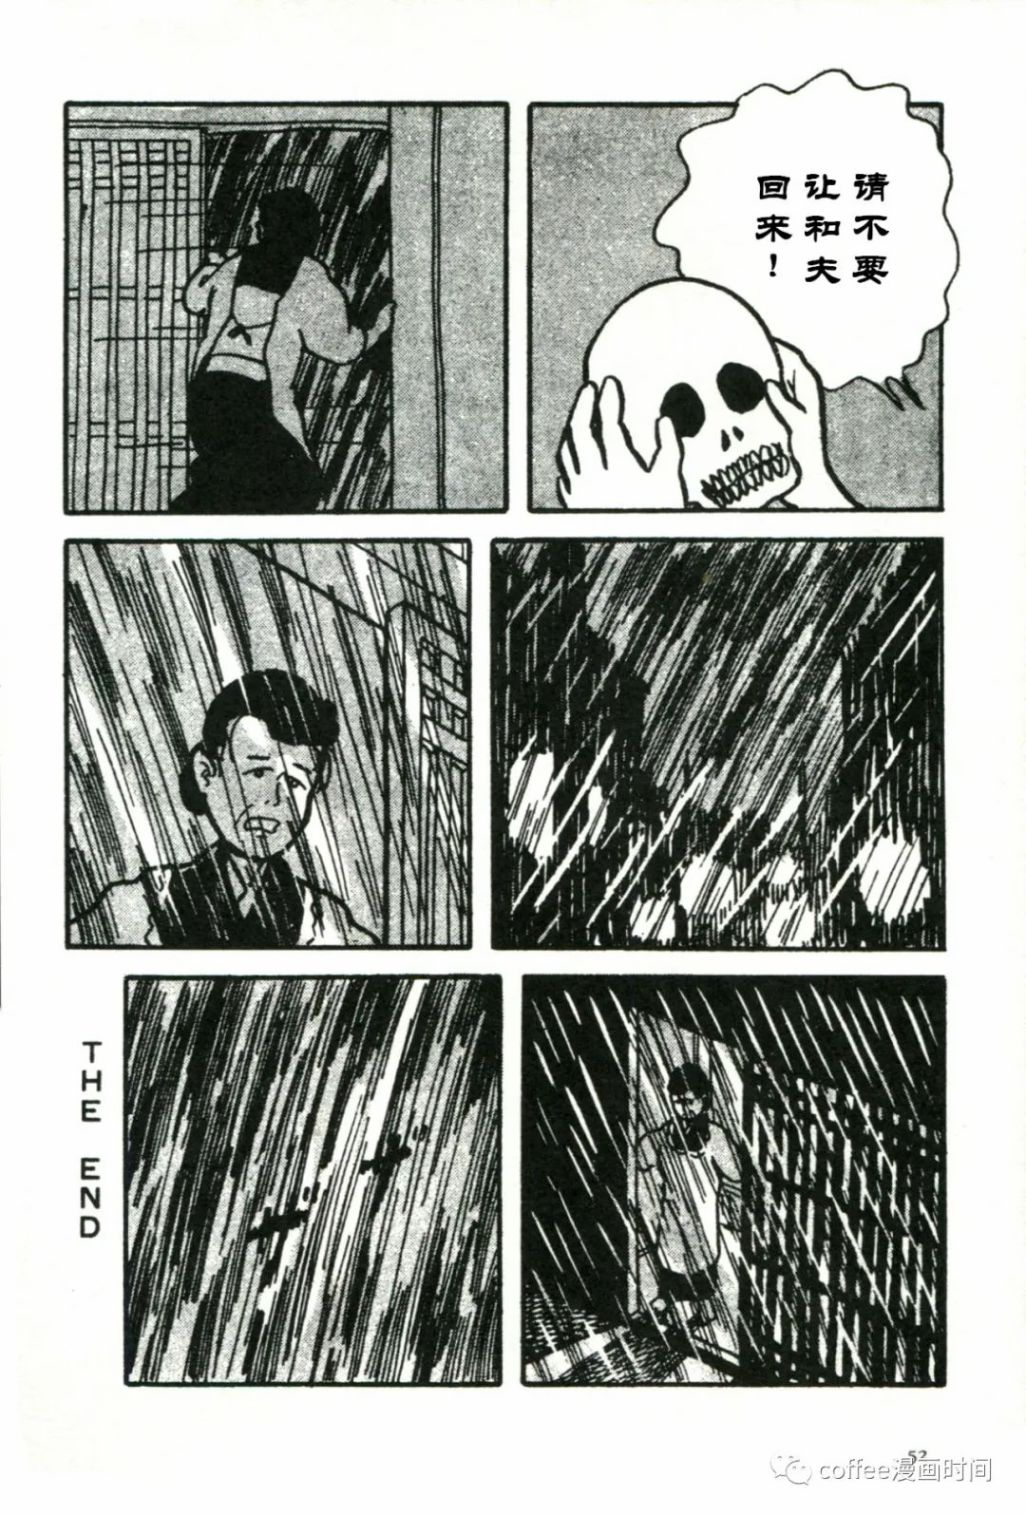 日本短篇漫畫傑作集 - 松本正彥《向骷髏許願》 - 2